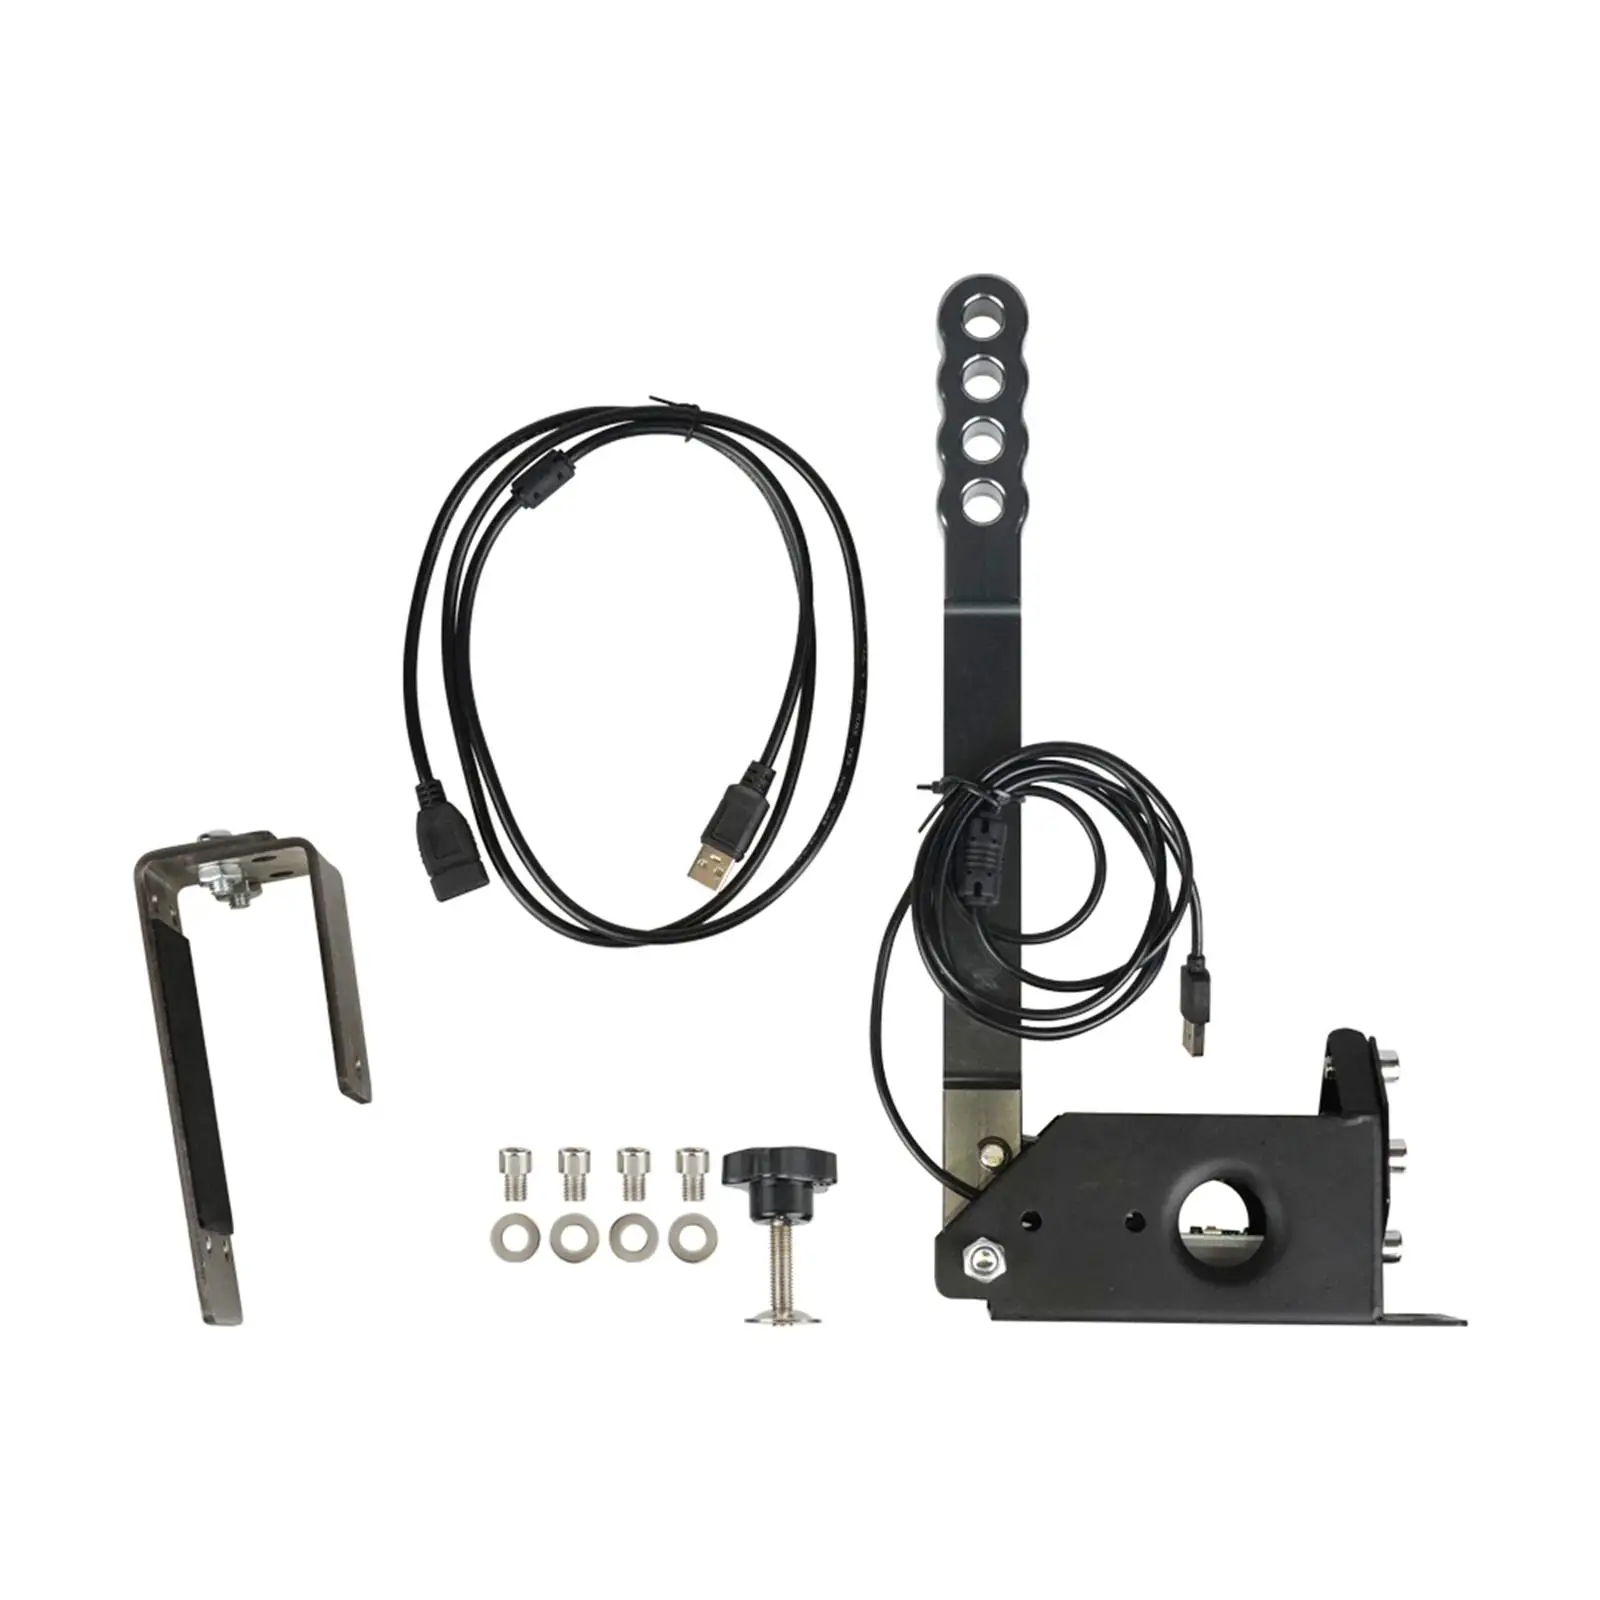 Brake System Handbrake Premium Adjustable Hall Sensor Game Peripherals Handbrake for Logitech G29 G27 G25 PC Racing Games